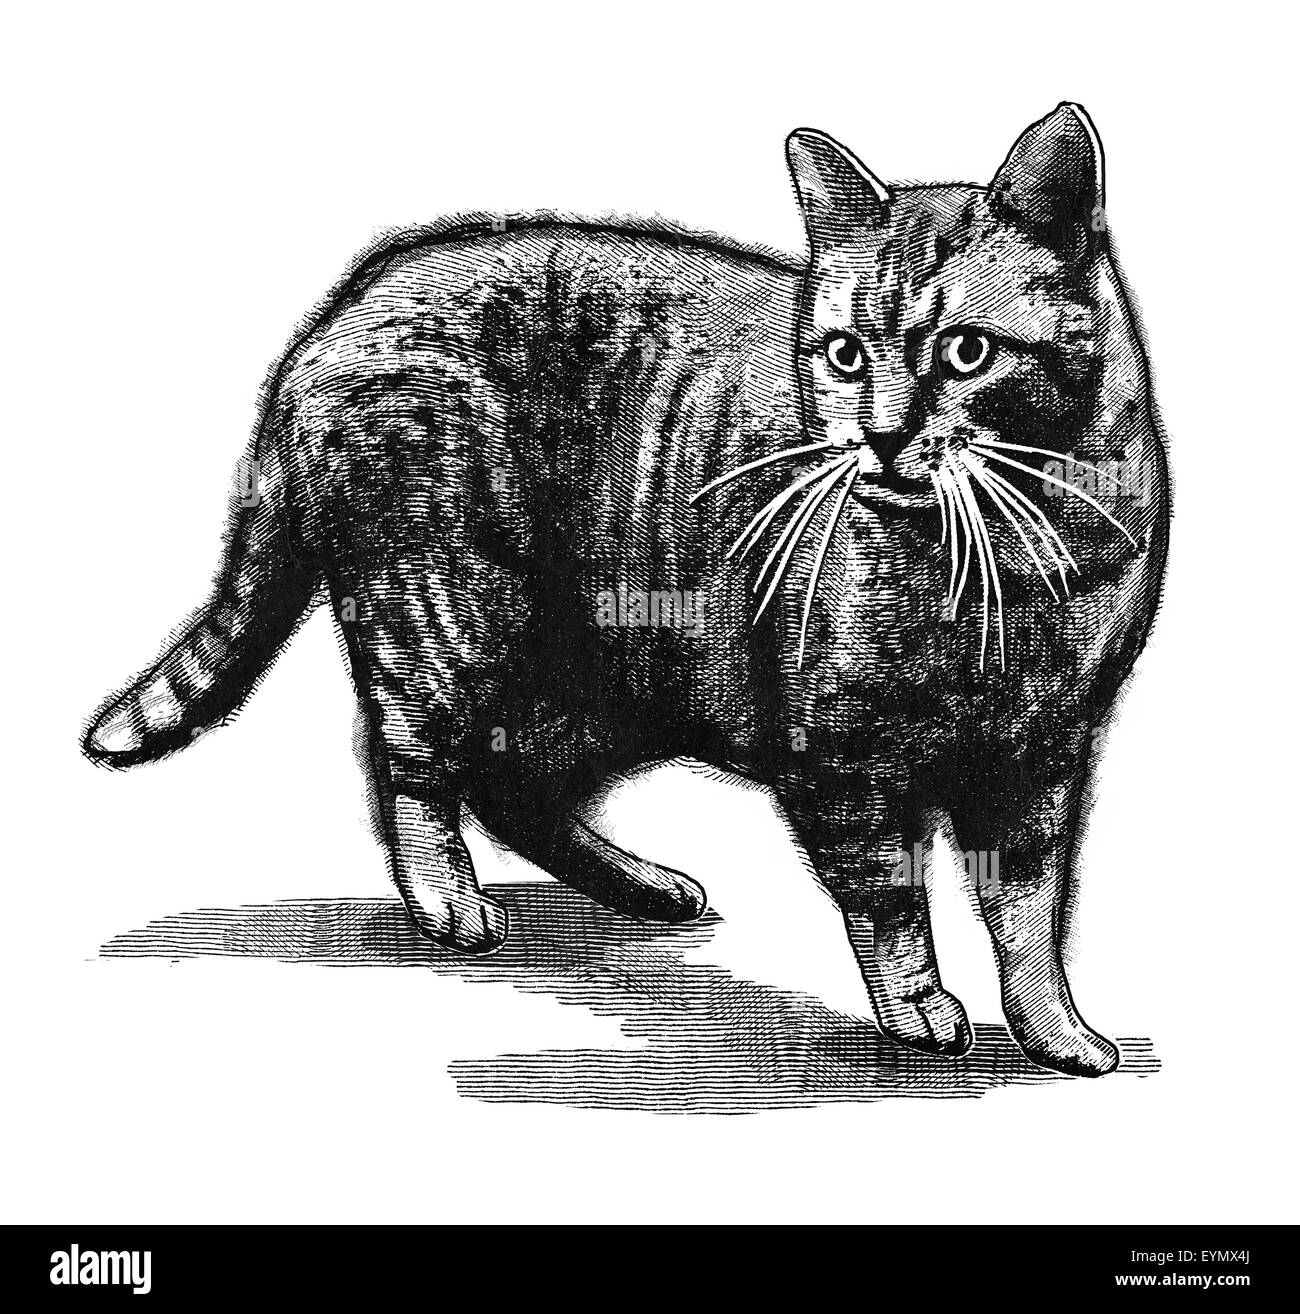 Ilustración digital original de un gato, en estilo de grabados antiguos. Foto de stock